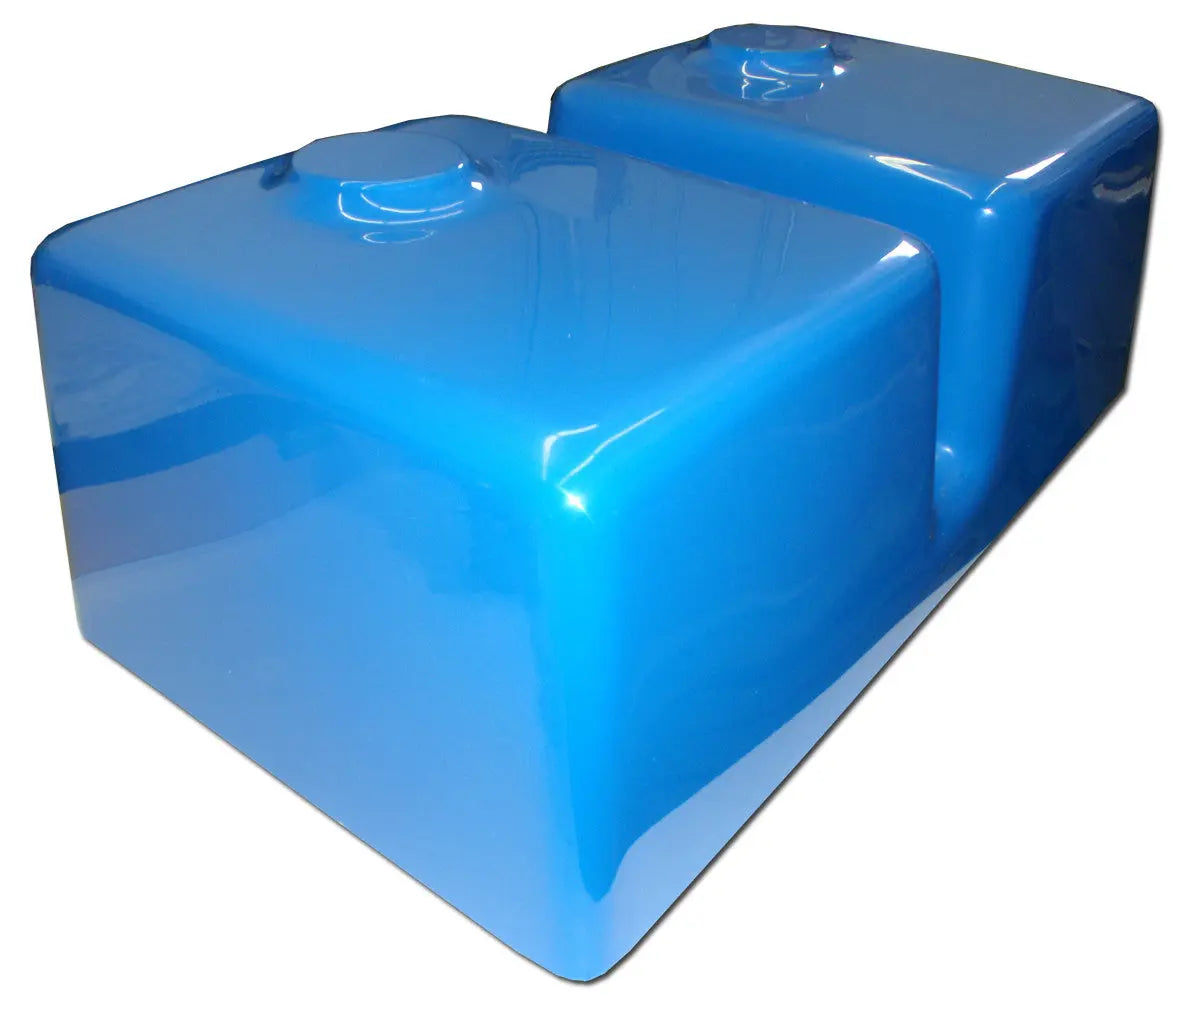 Concrete Sink Mold SDP-38 Kitchen Double Basin (30"x16.25"x9.75") PNL Liners